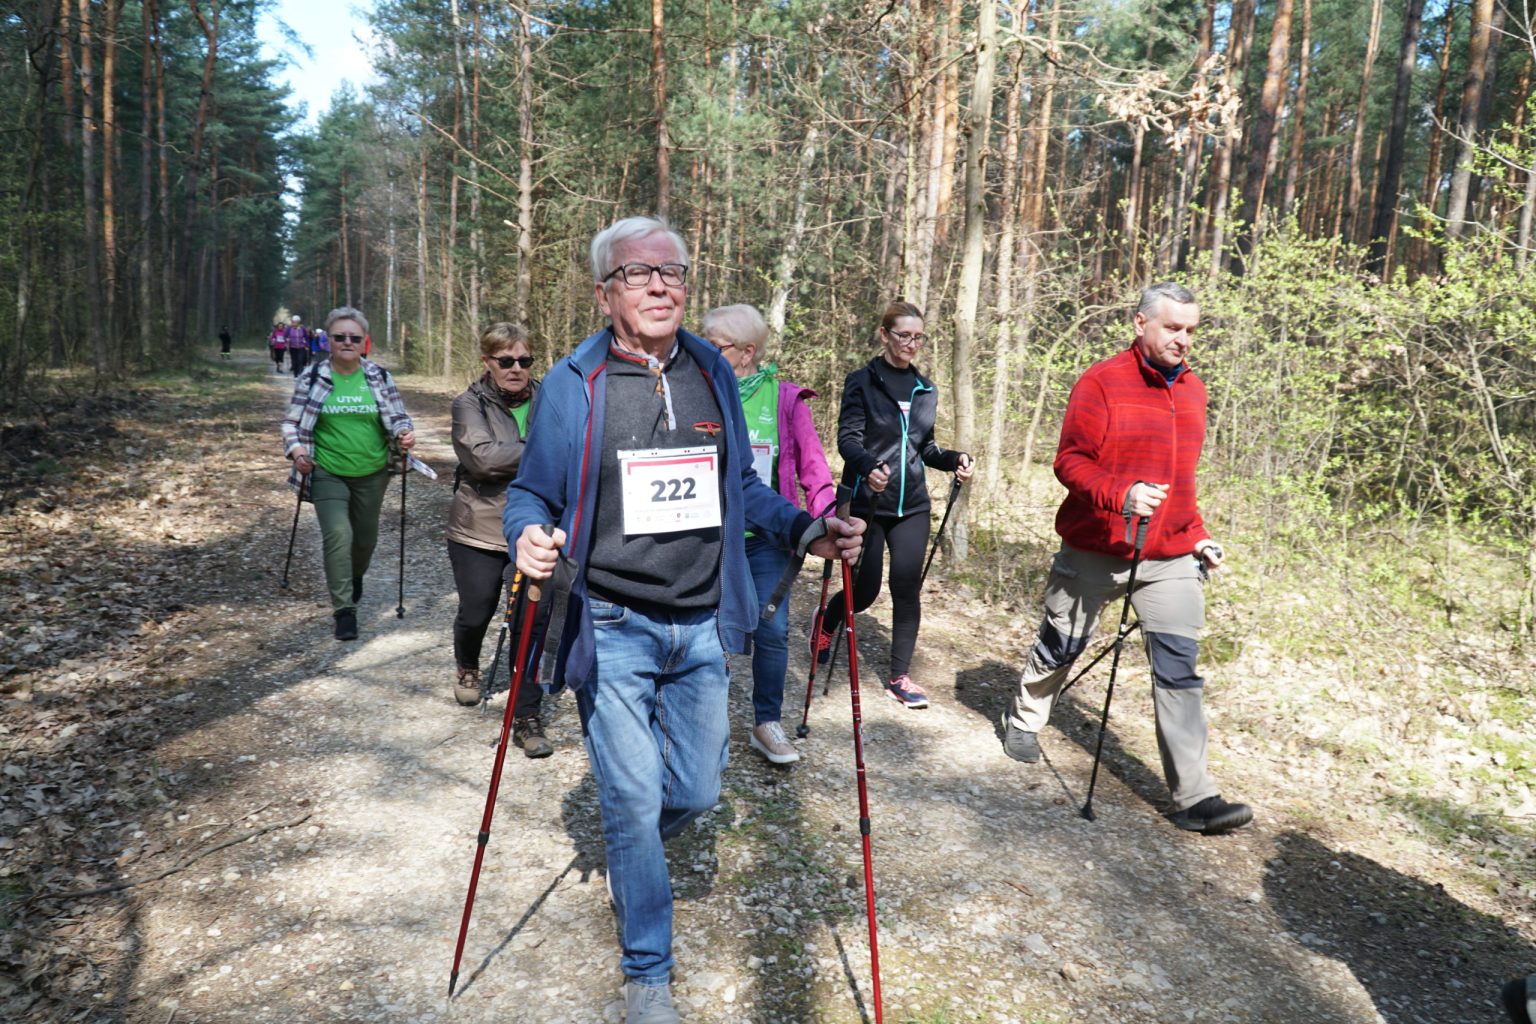 Grupa osób na trasie nordic walking prowadzącej przez las